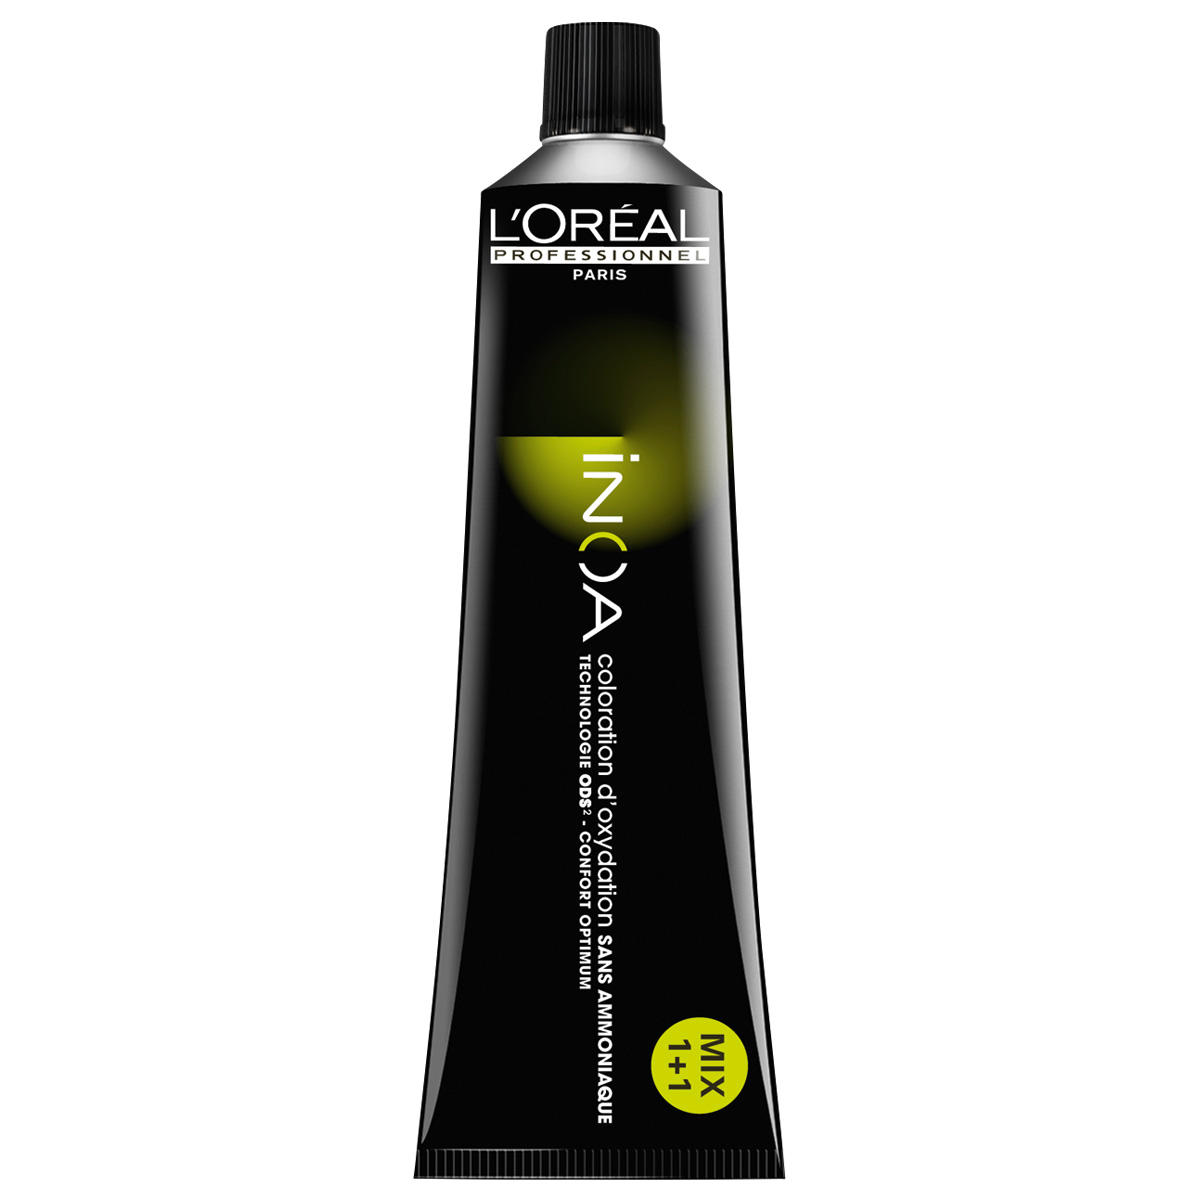 L'Oréal Professionnel Paris Coloration 9.0 Rubio muy claro intensivo, tubo 60 ml